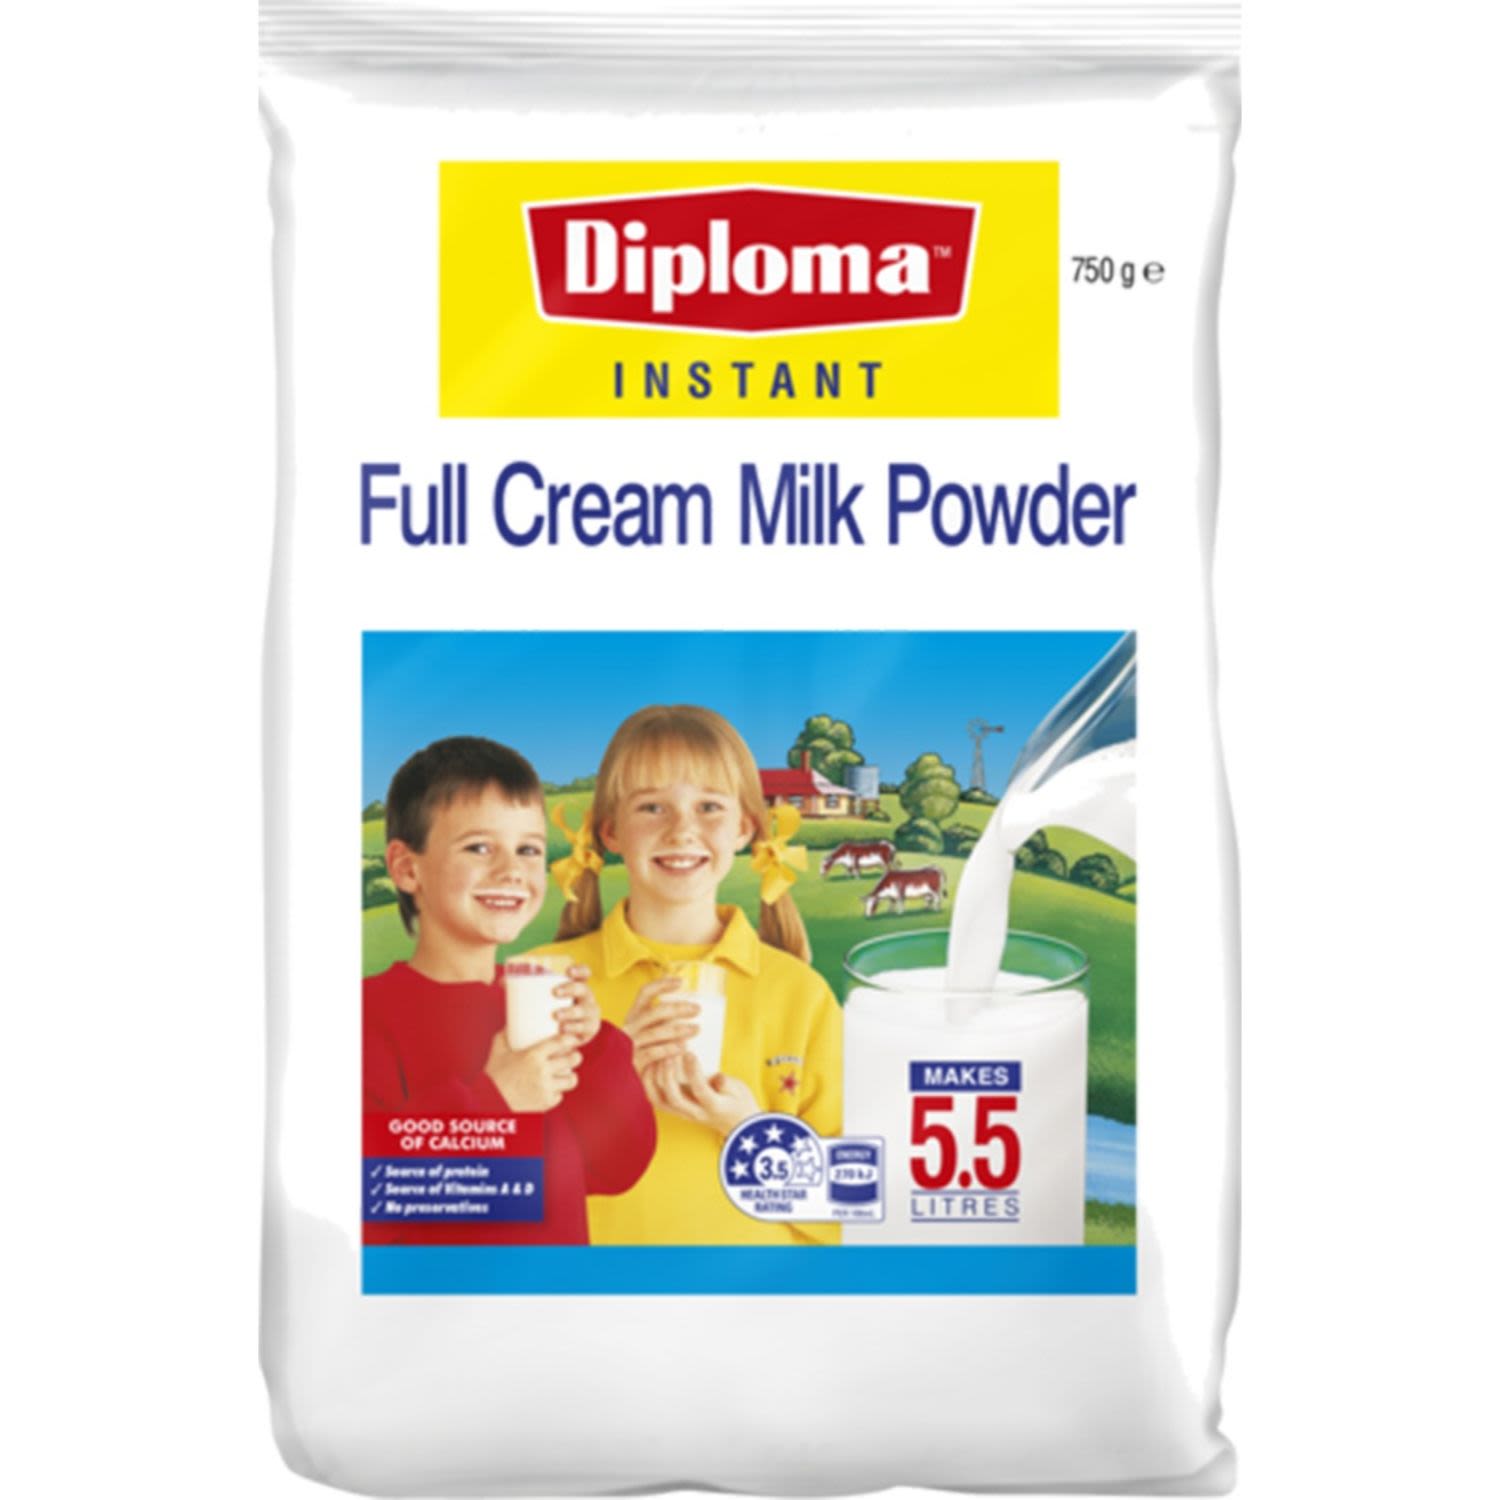 Diploma Instant Full Cream Milk Powder, 750 Gram